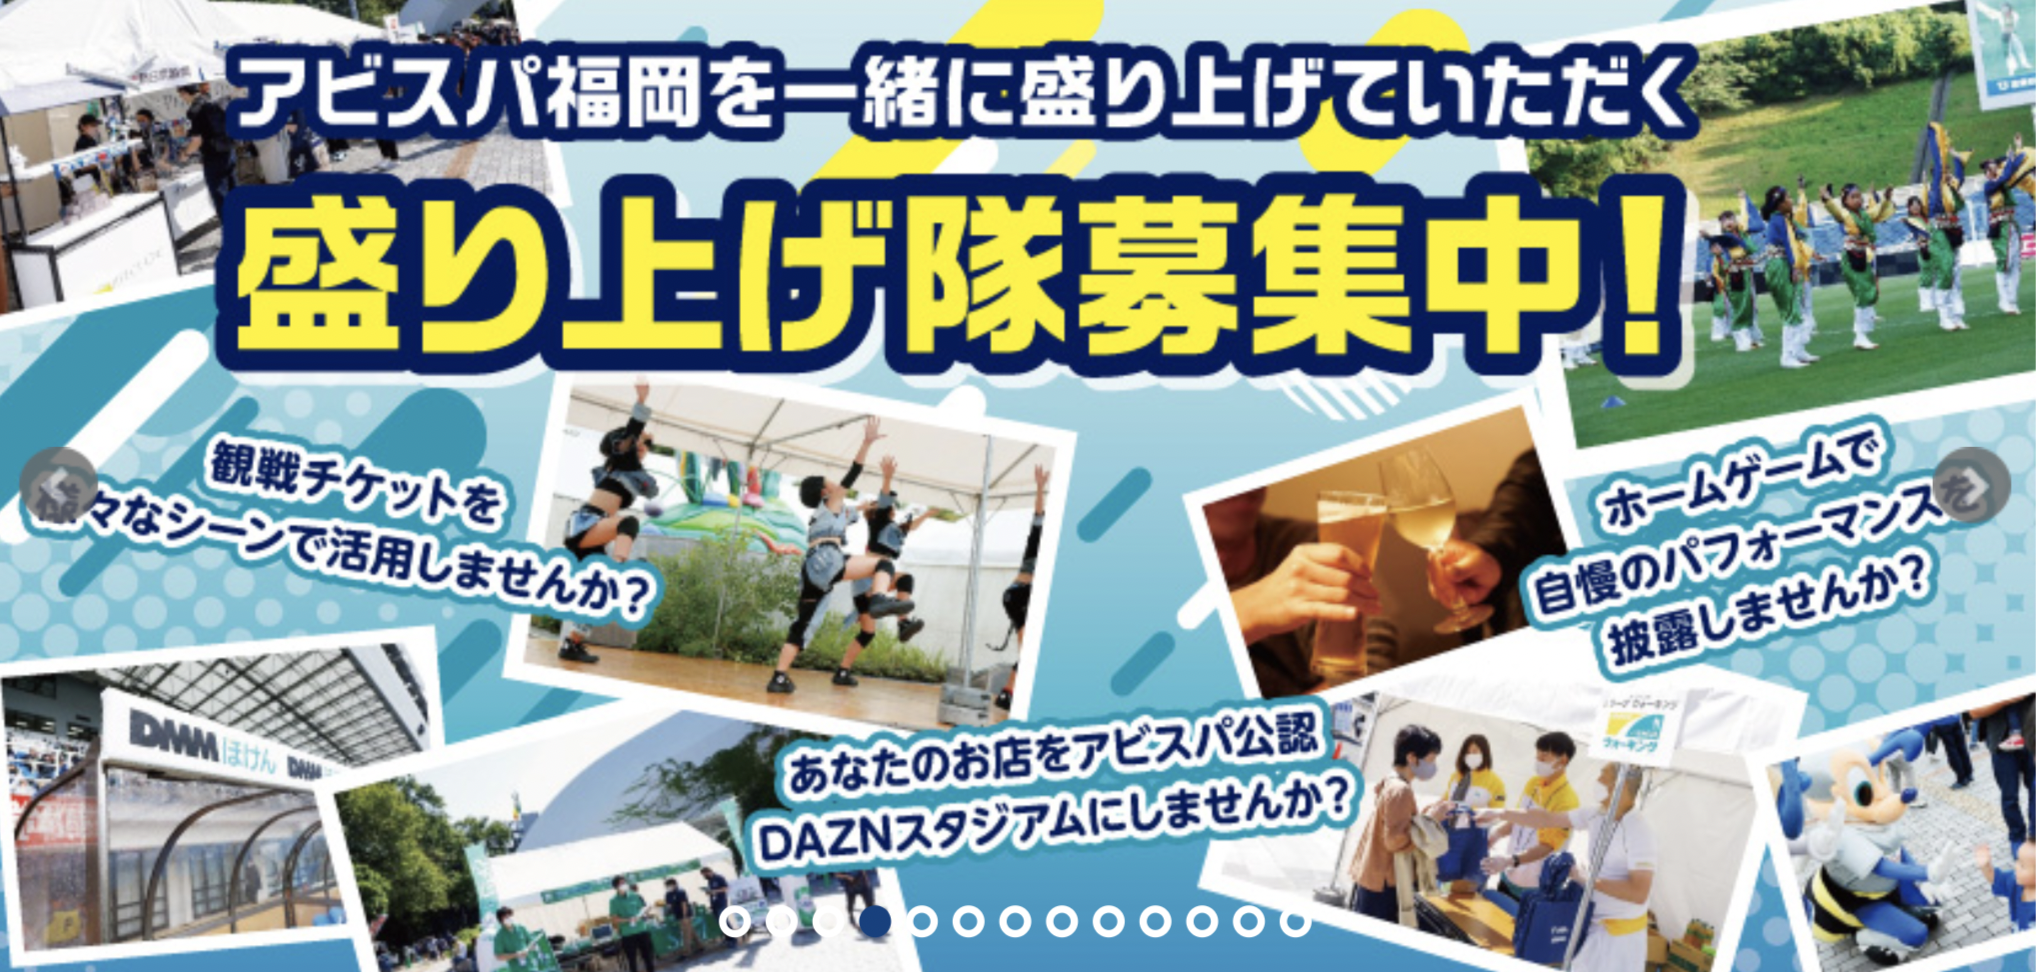 株式会社cielo Azul J1 アビスパ福岡 とスポンサー契約を締結 Newscast